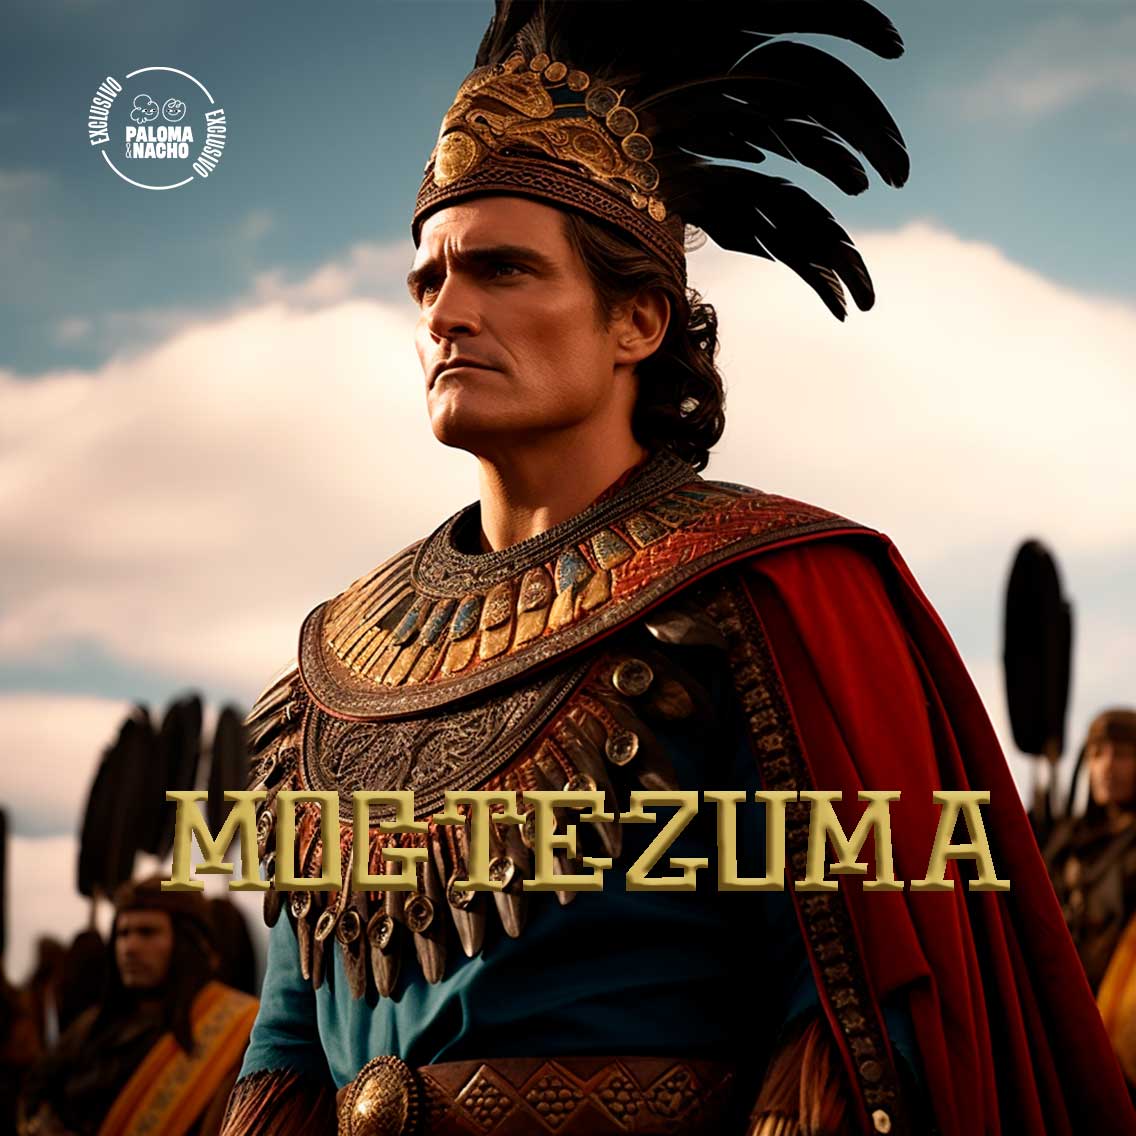 Moctezuma IA